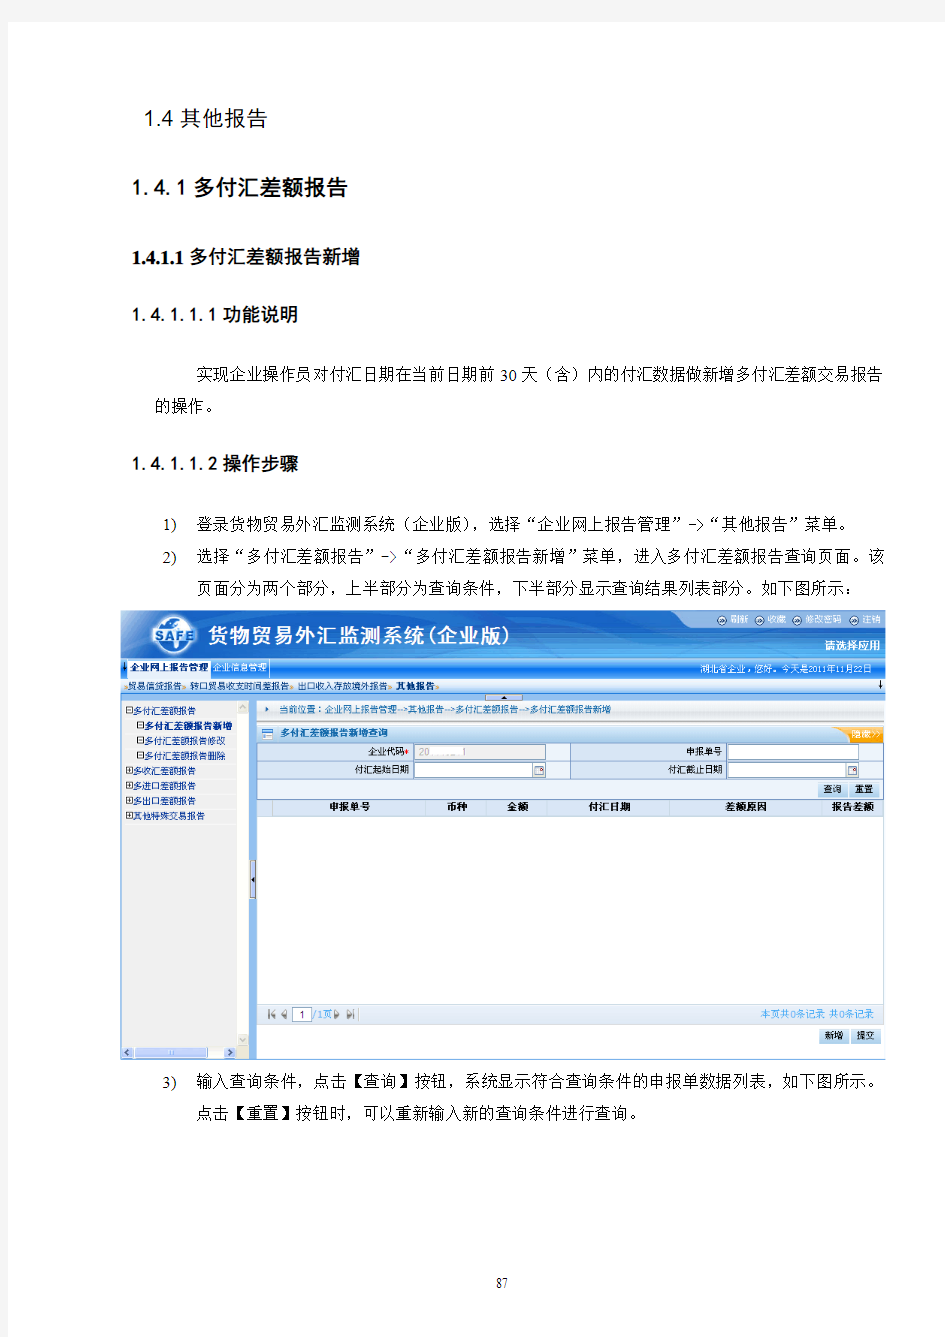 货物贸易外汇监测系统 企业版 用户手册 v 下册